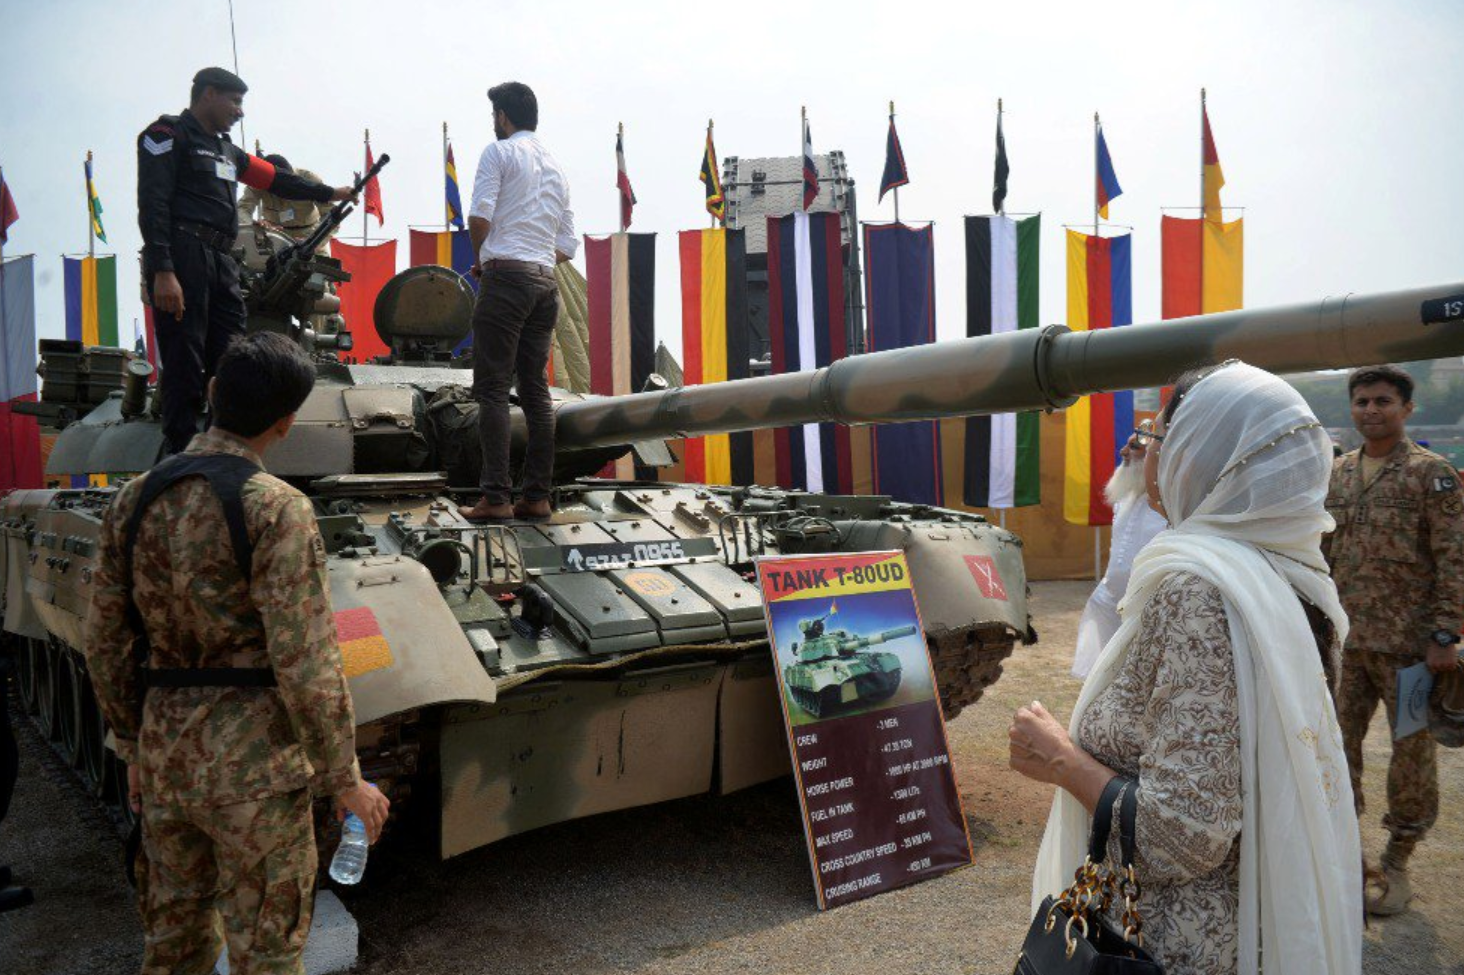 T-80UD卖巴基斯坦让印军压力上涨，俄罗斯推销T-90赚钱